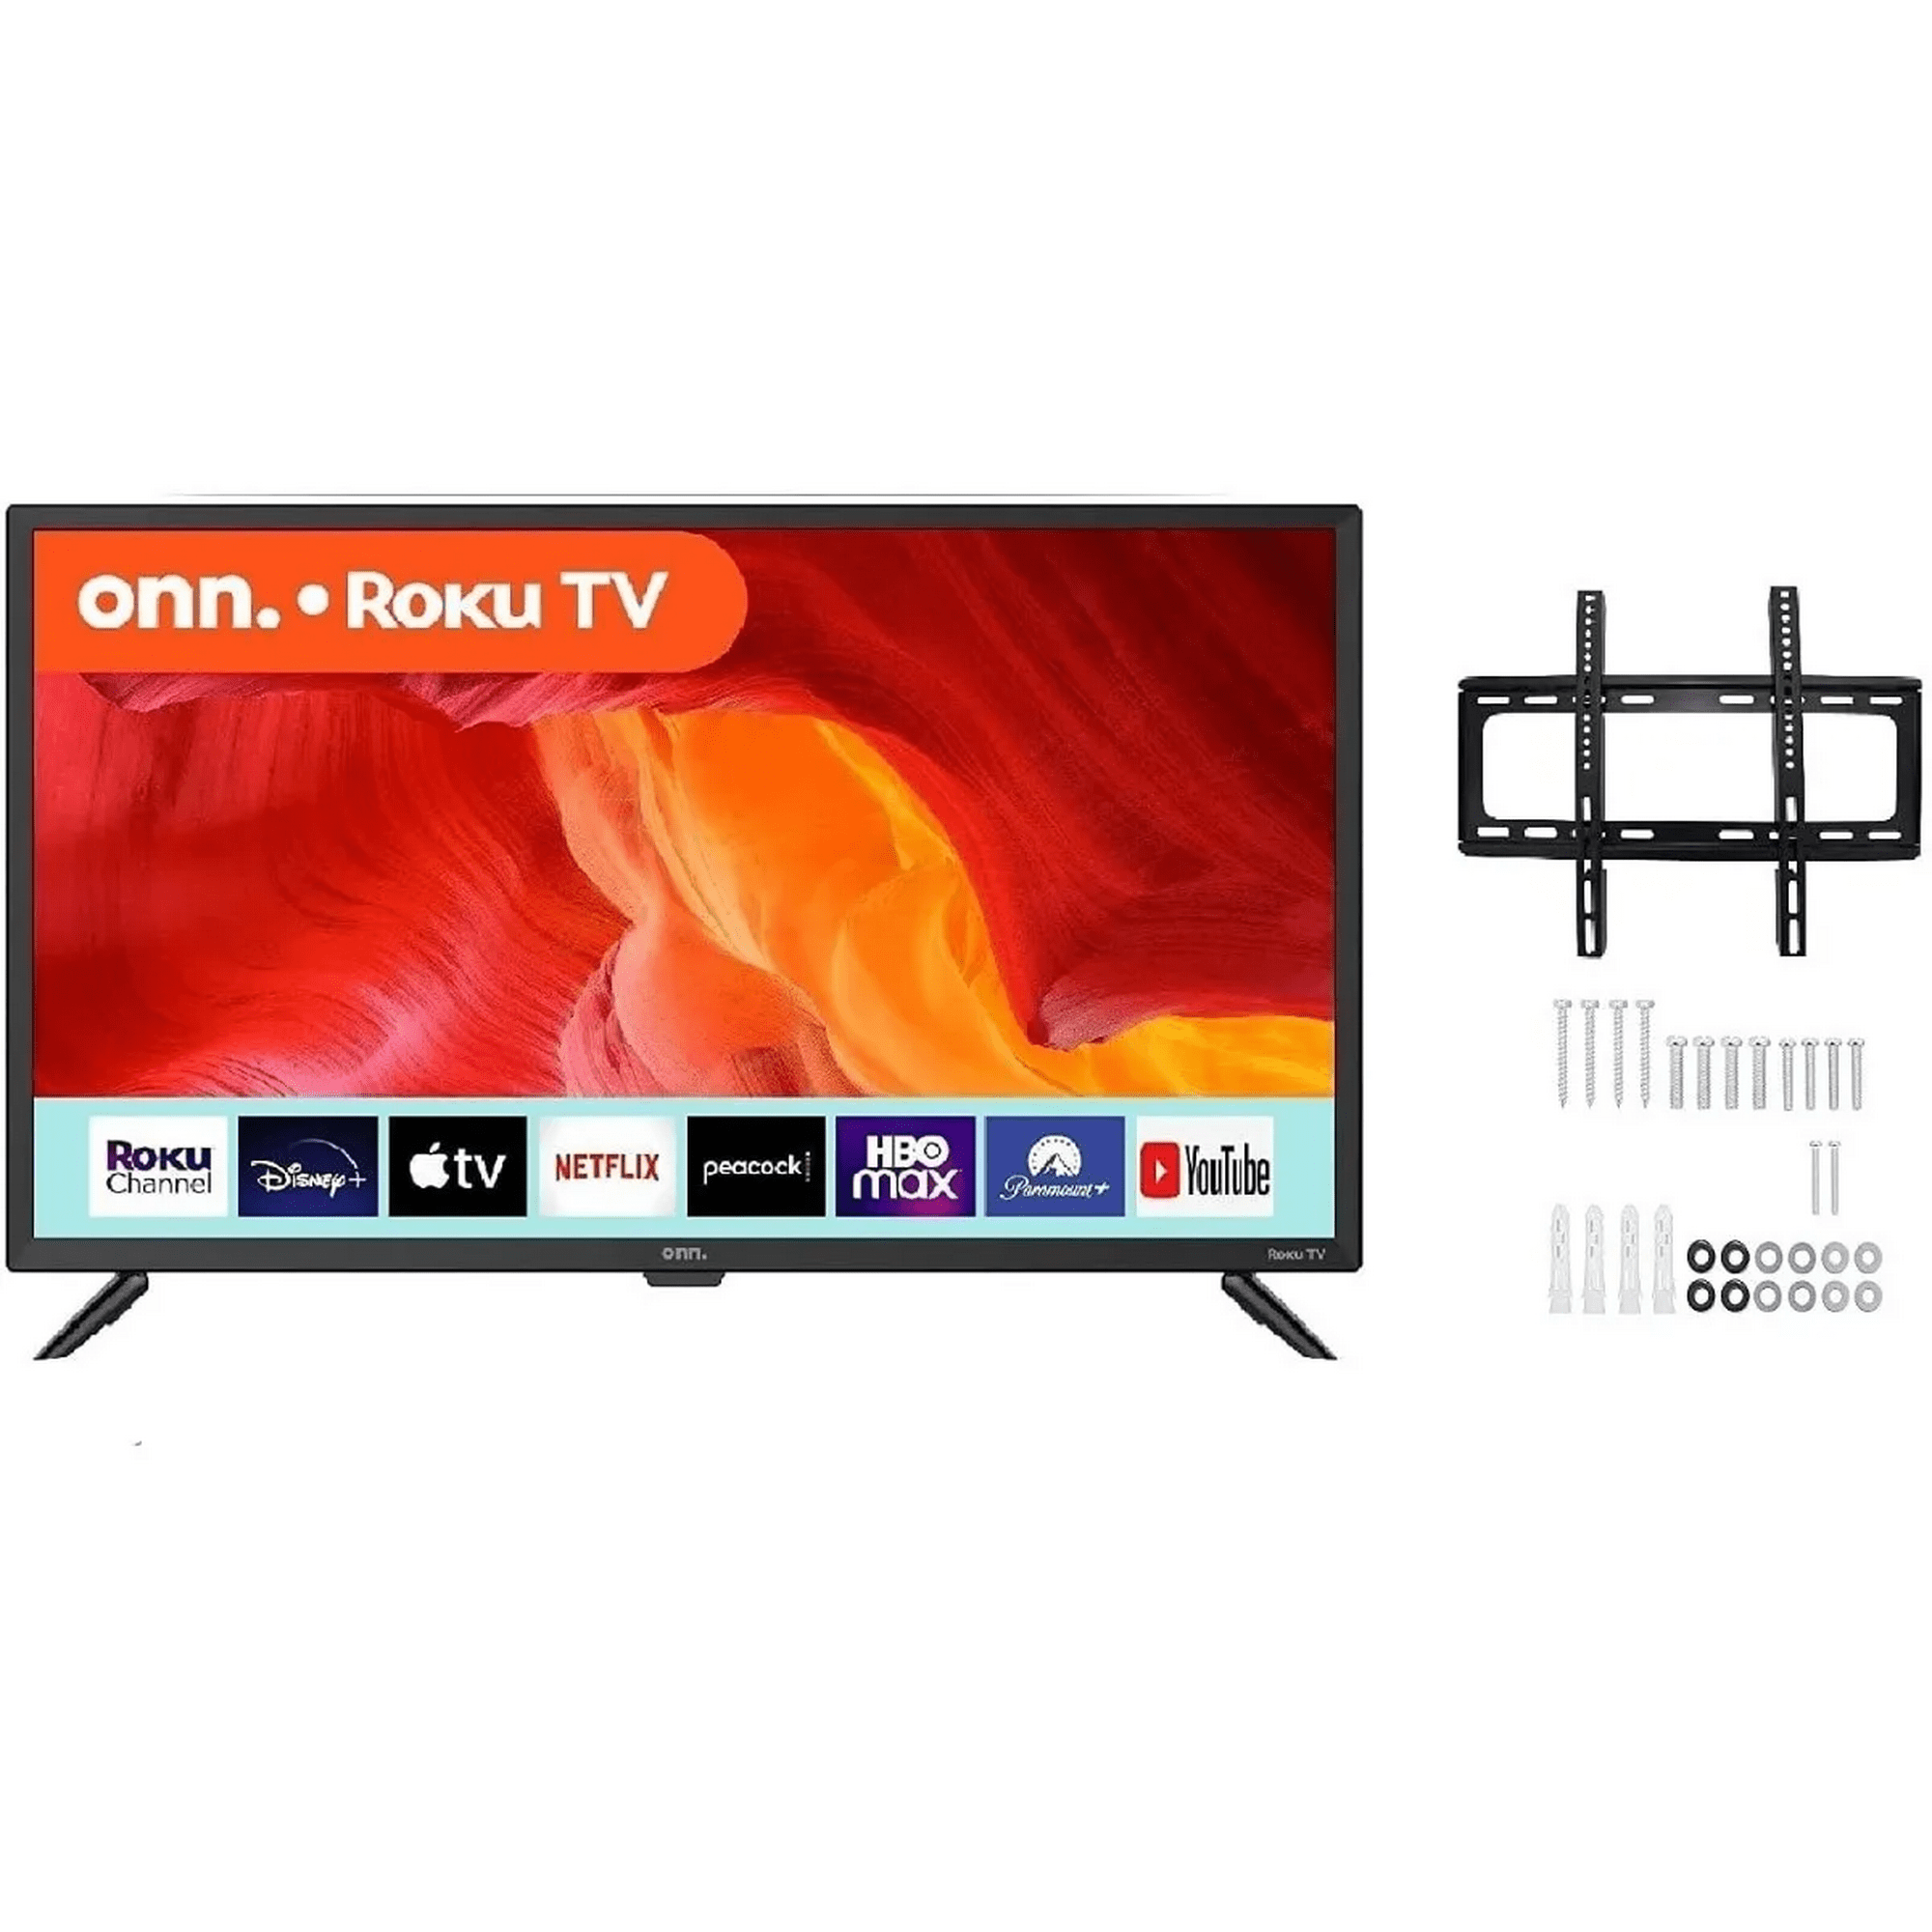 Televisión Onn Smart modelo ONN 100012589 de 32 pulgadas con pantalla LED y  HD 720p